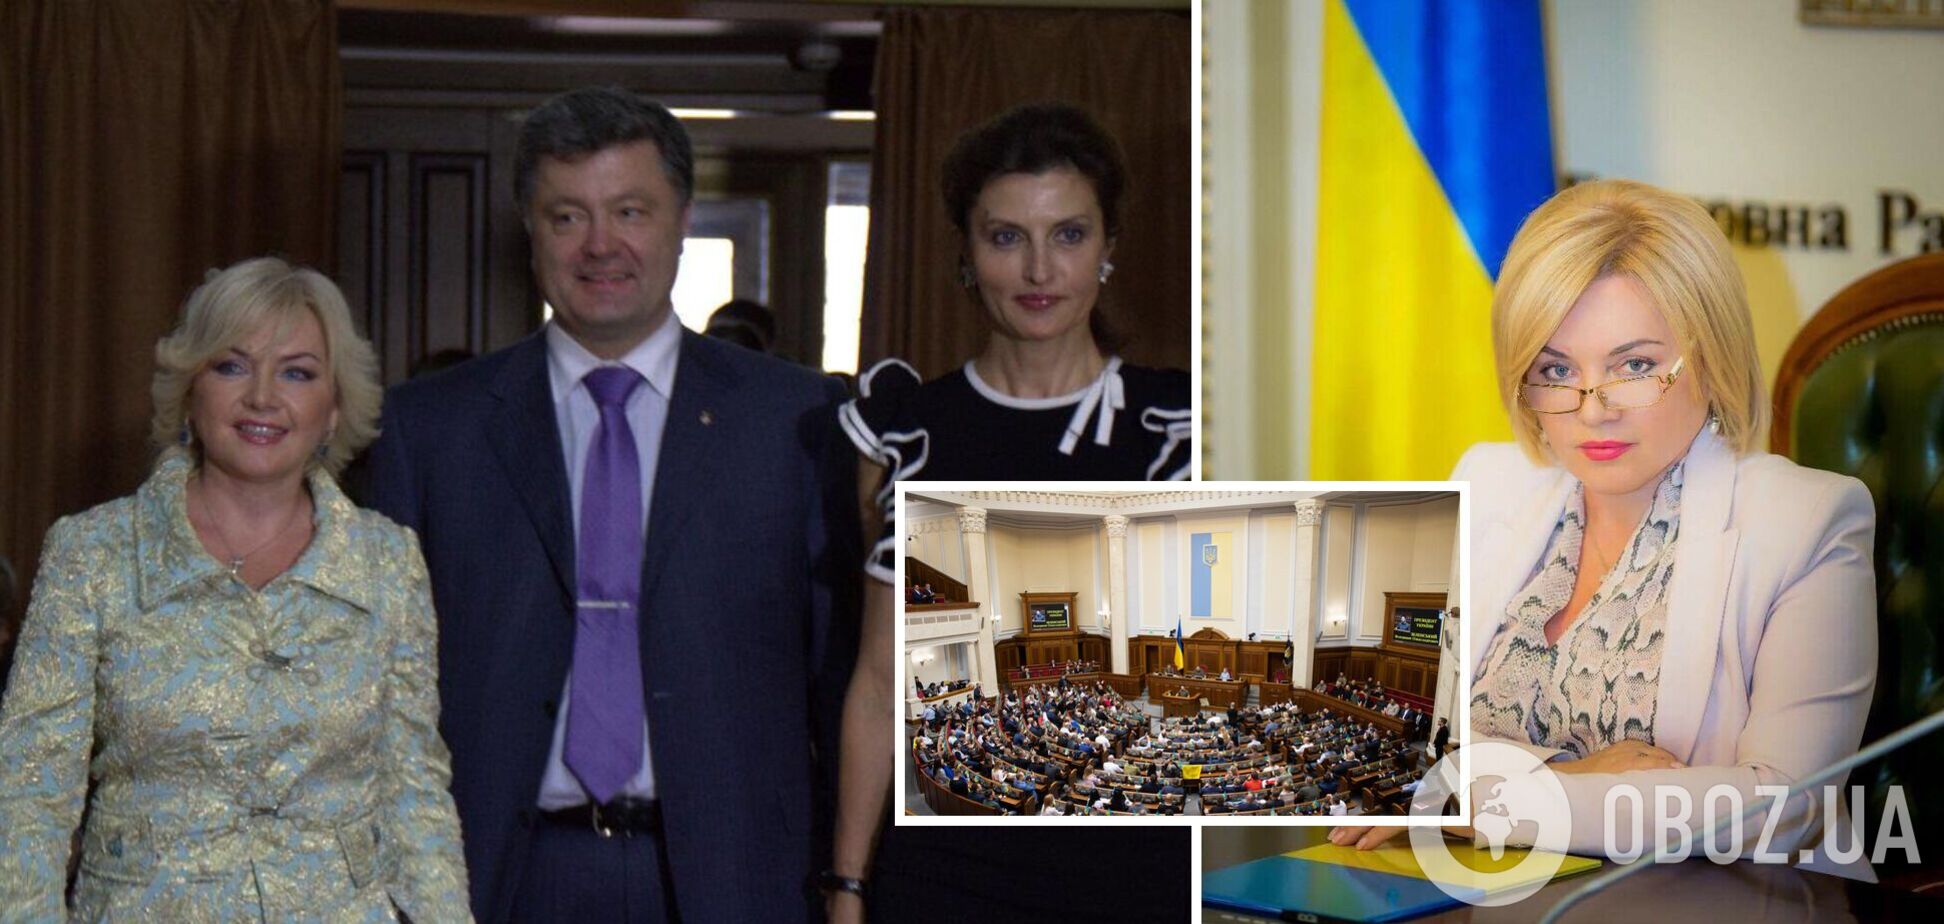 'Я много знаю': Оксана Билозир снова собралась в политику и рассказала о близкой дружбе с президентами Украины